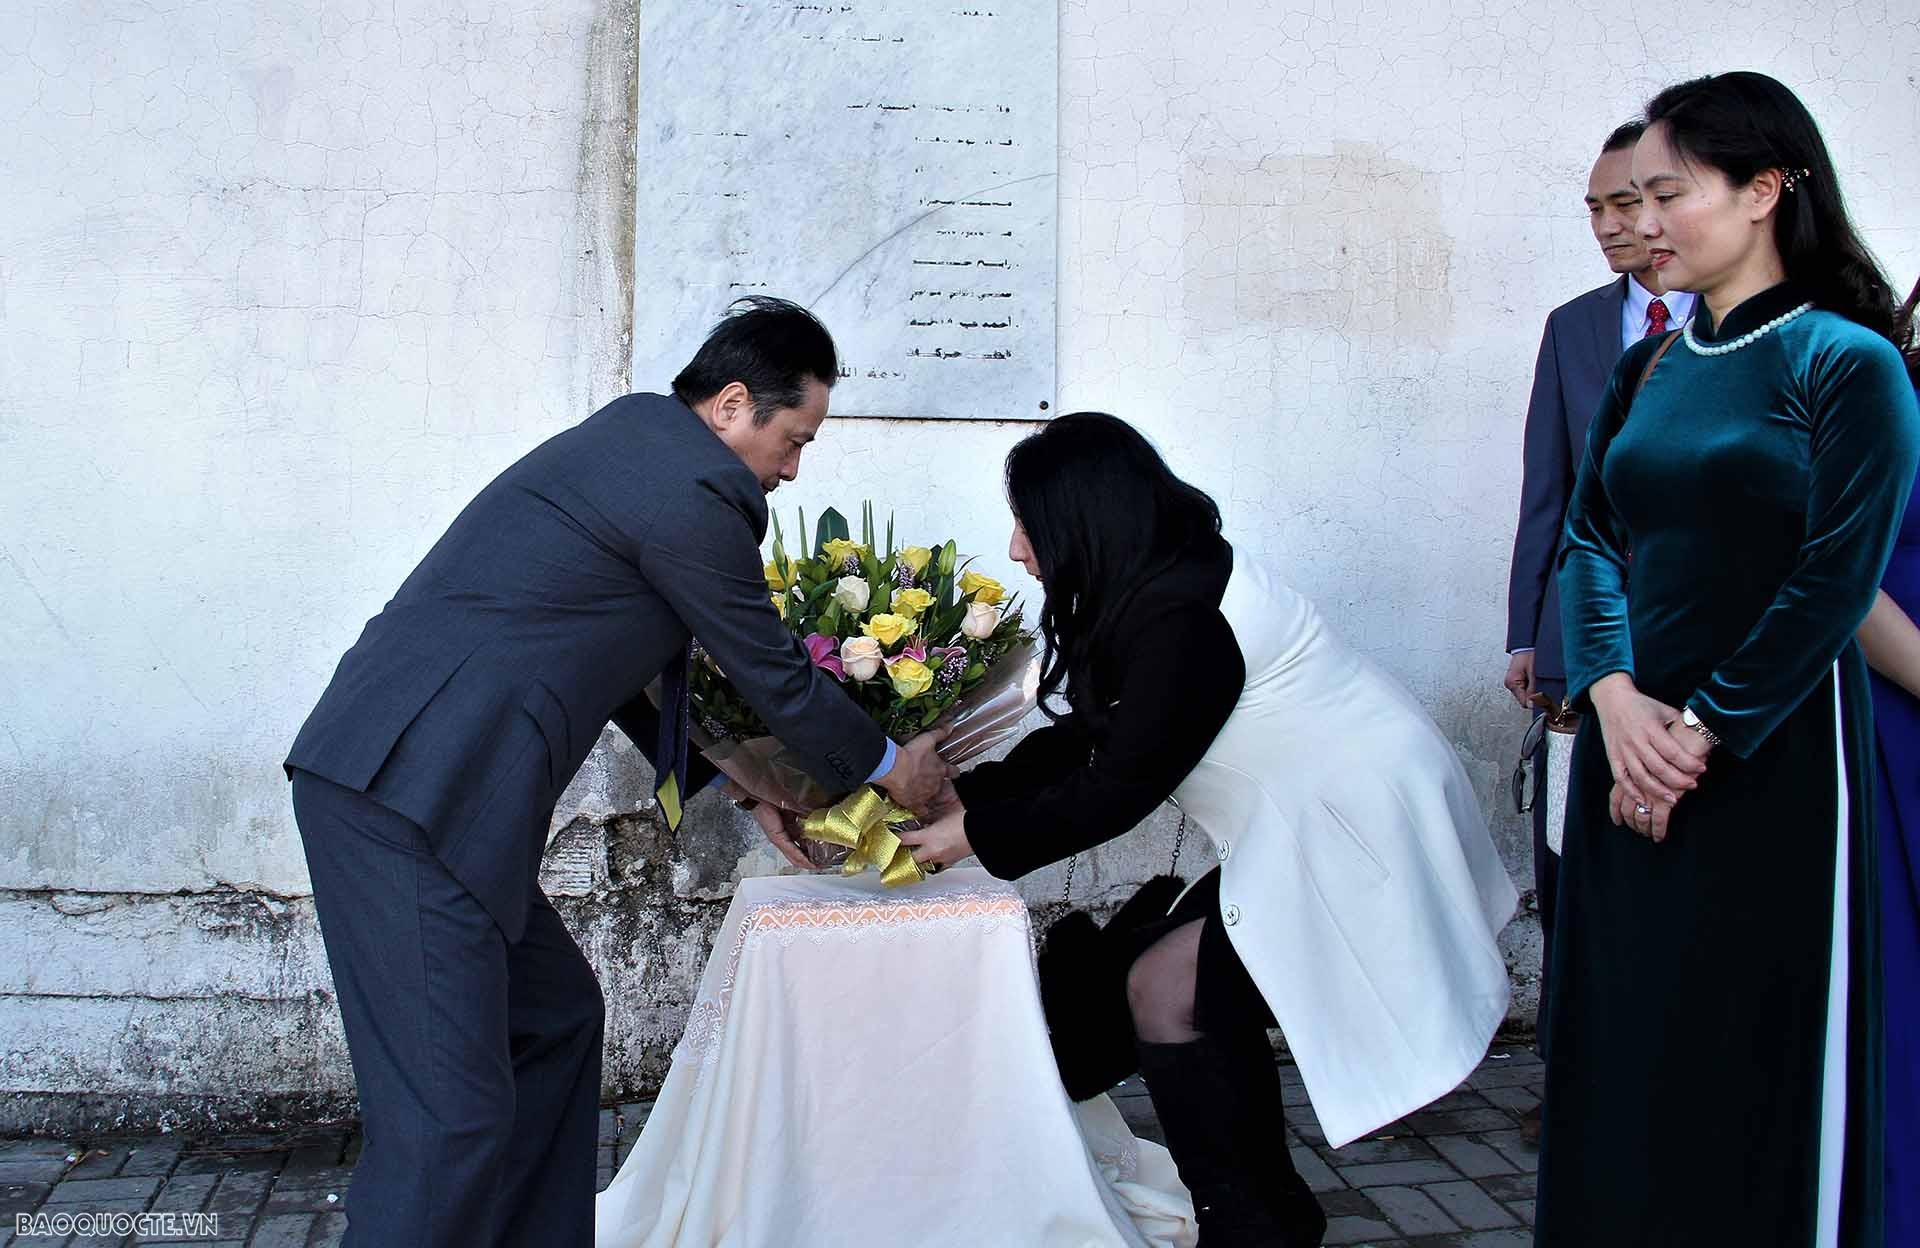 Đại sứ Nguyễn Thành Vinh dâng hoa tại bia tưởng niệm ở đường Nhà báo Việt Nam, thủ đô Algiers, Algeria.